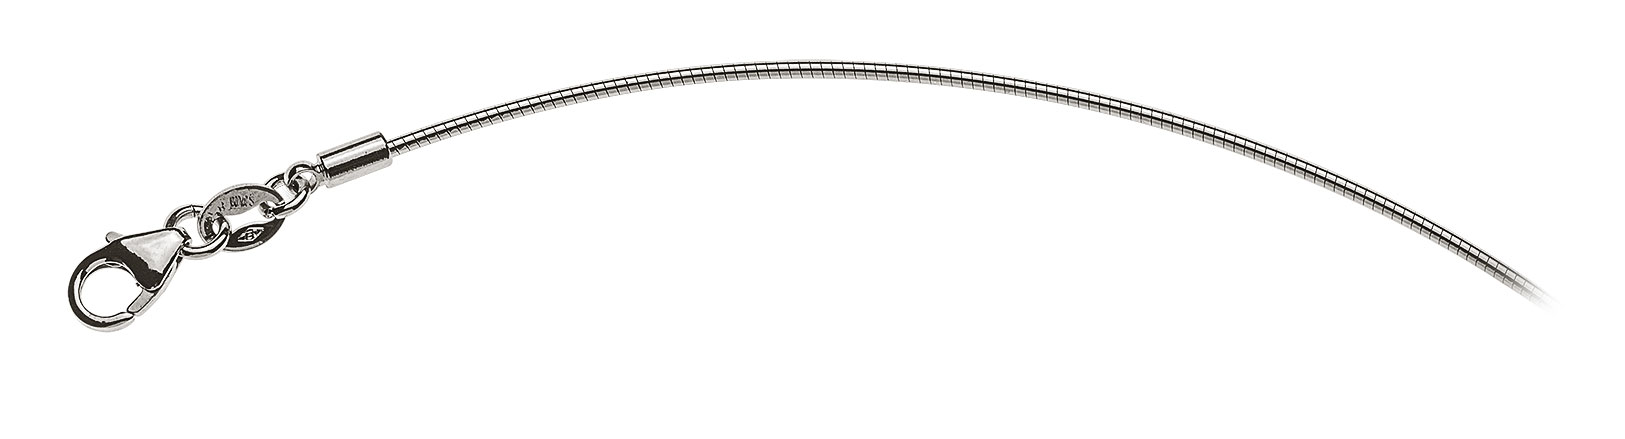 AURONOS Prestige White Gold 18K Omega Necklace 40cm 1.0mm